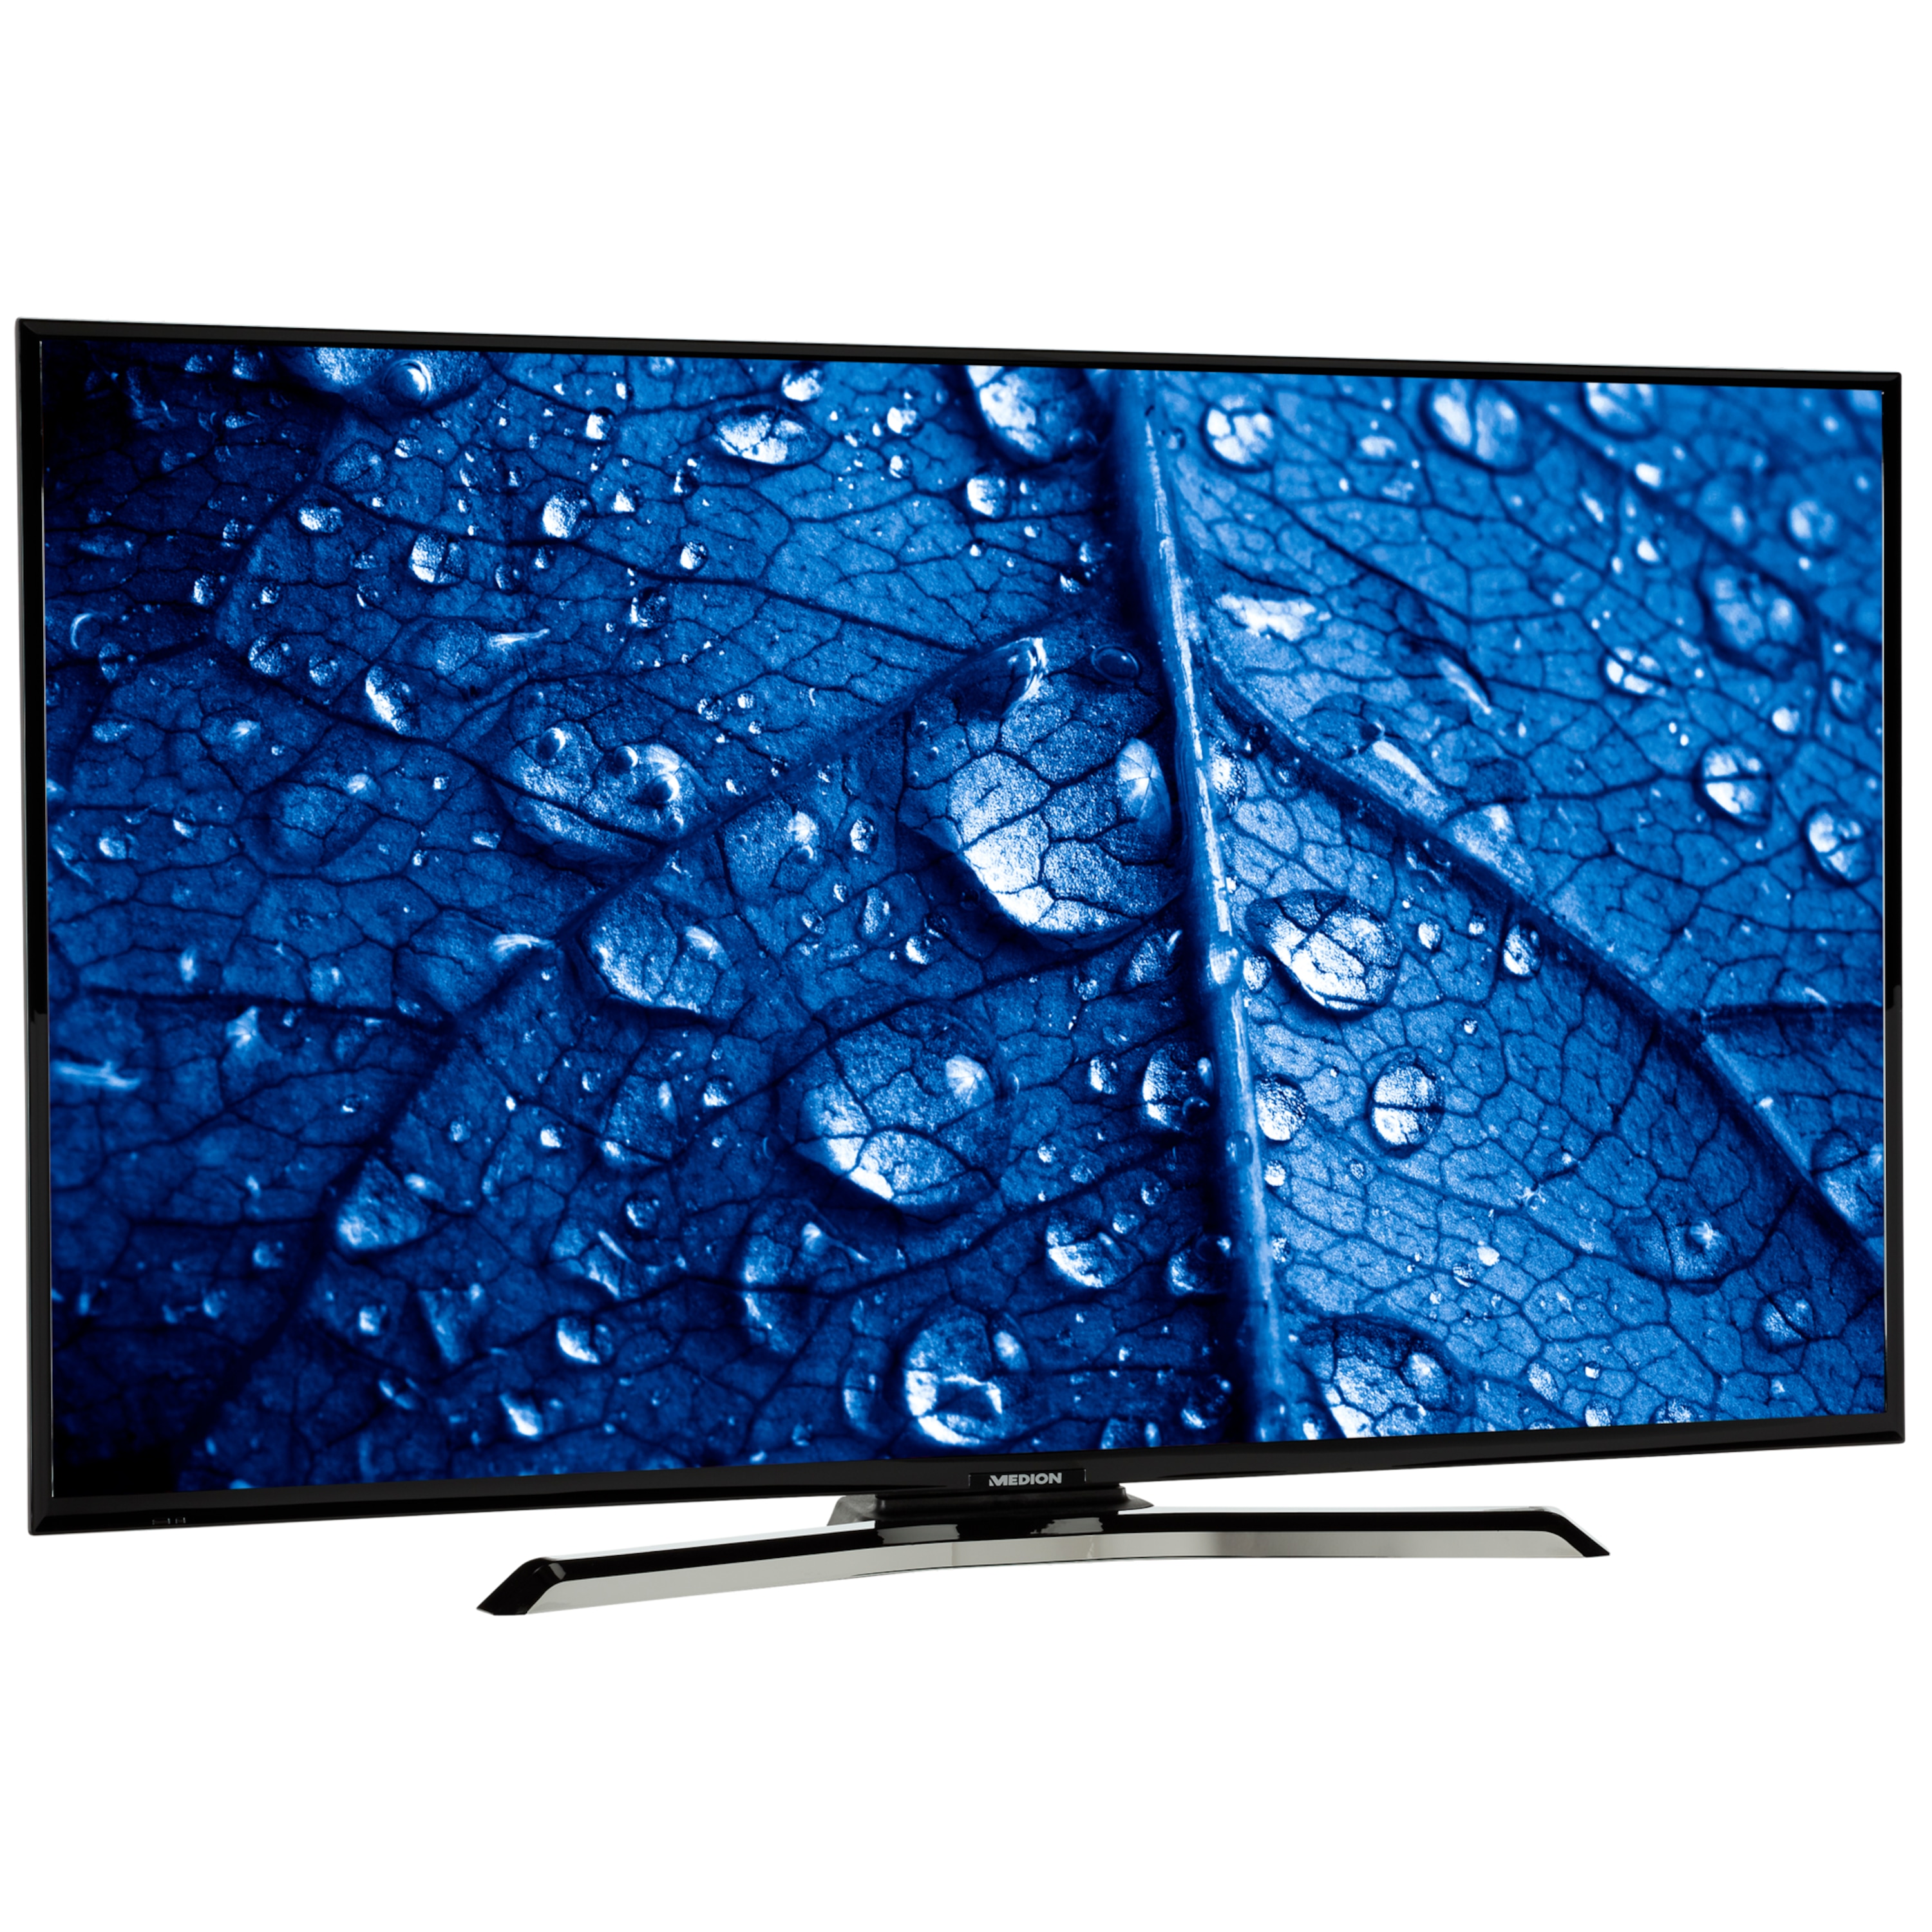 MEDION® LIFE® P14353 Smart-TV, 108 cm (43'') Full HD Fernseher, inkl. DVB-T 2 HD Modul (12 Monate freenet TV gratis) - ARTIKELSET